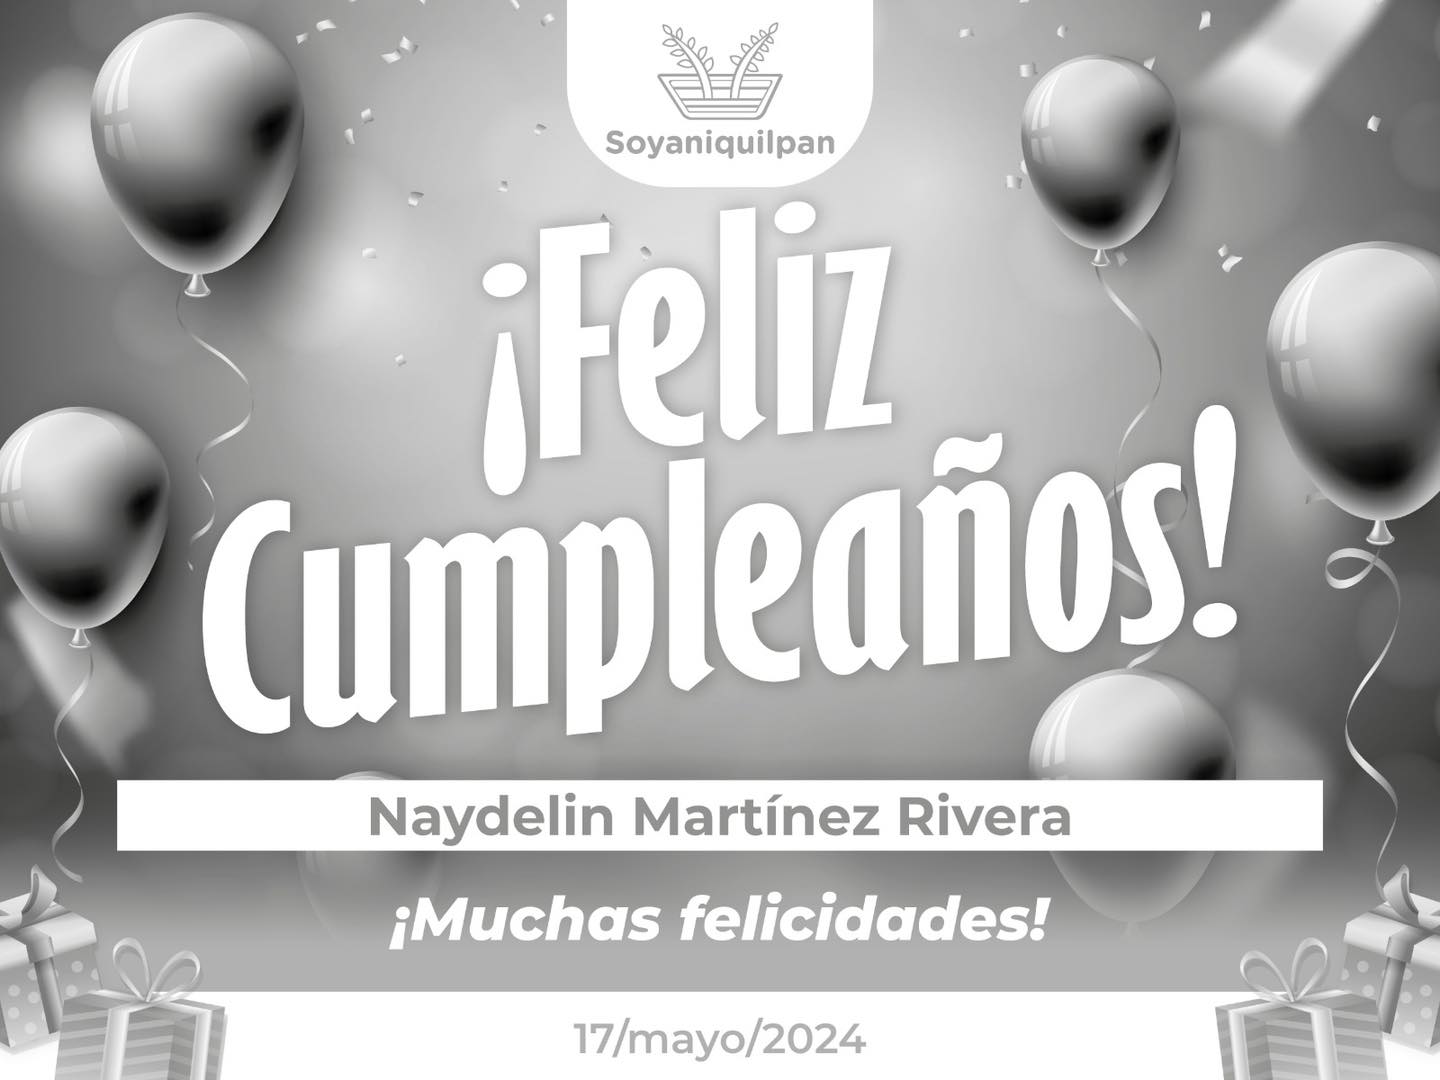 Felicitamos a nuestra companera Naydelin Martinez Rivera con motivo de